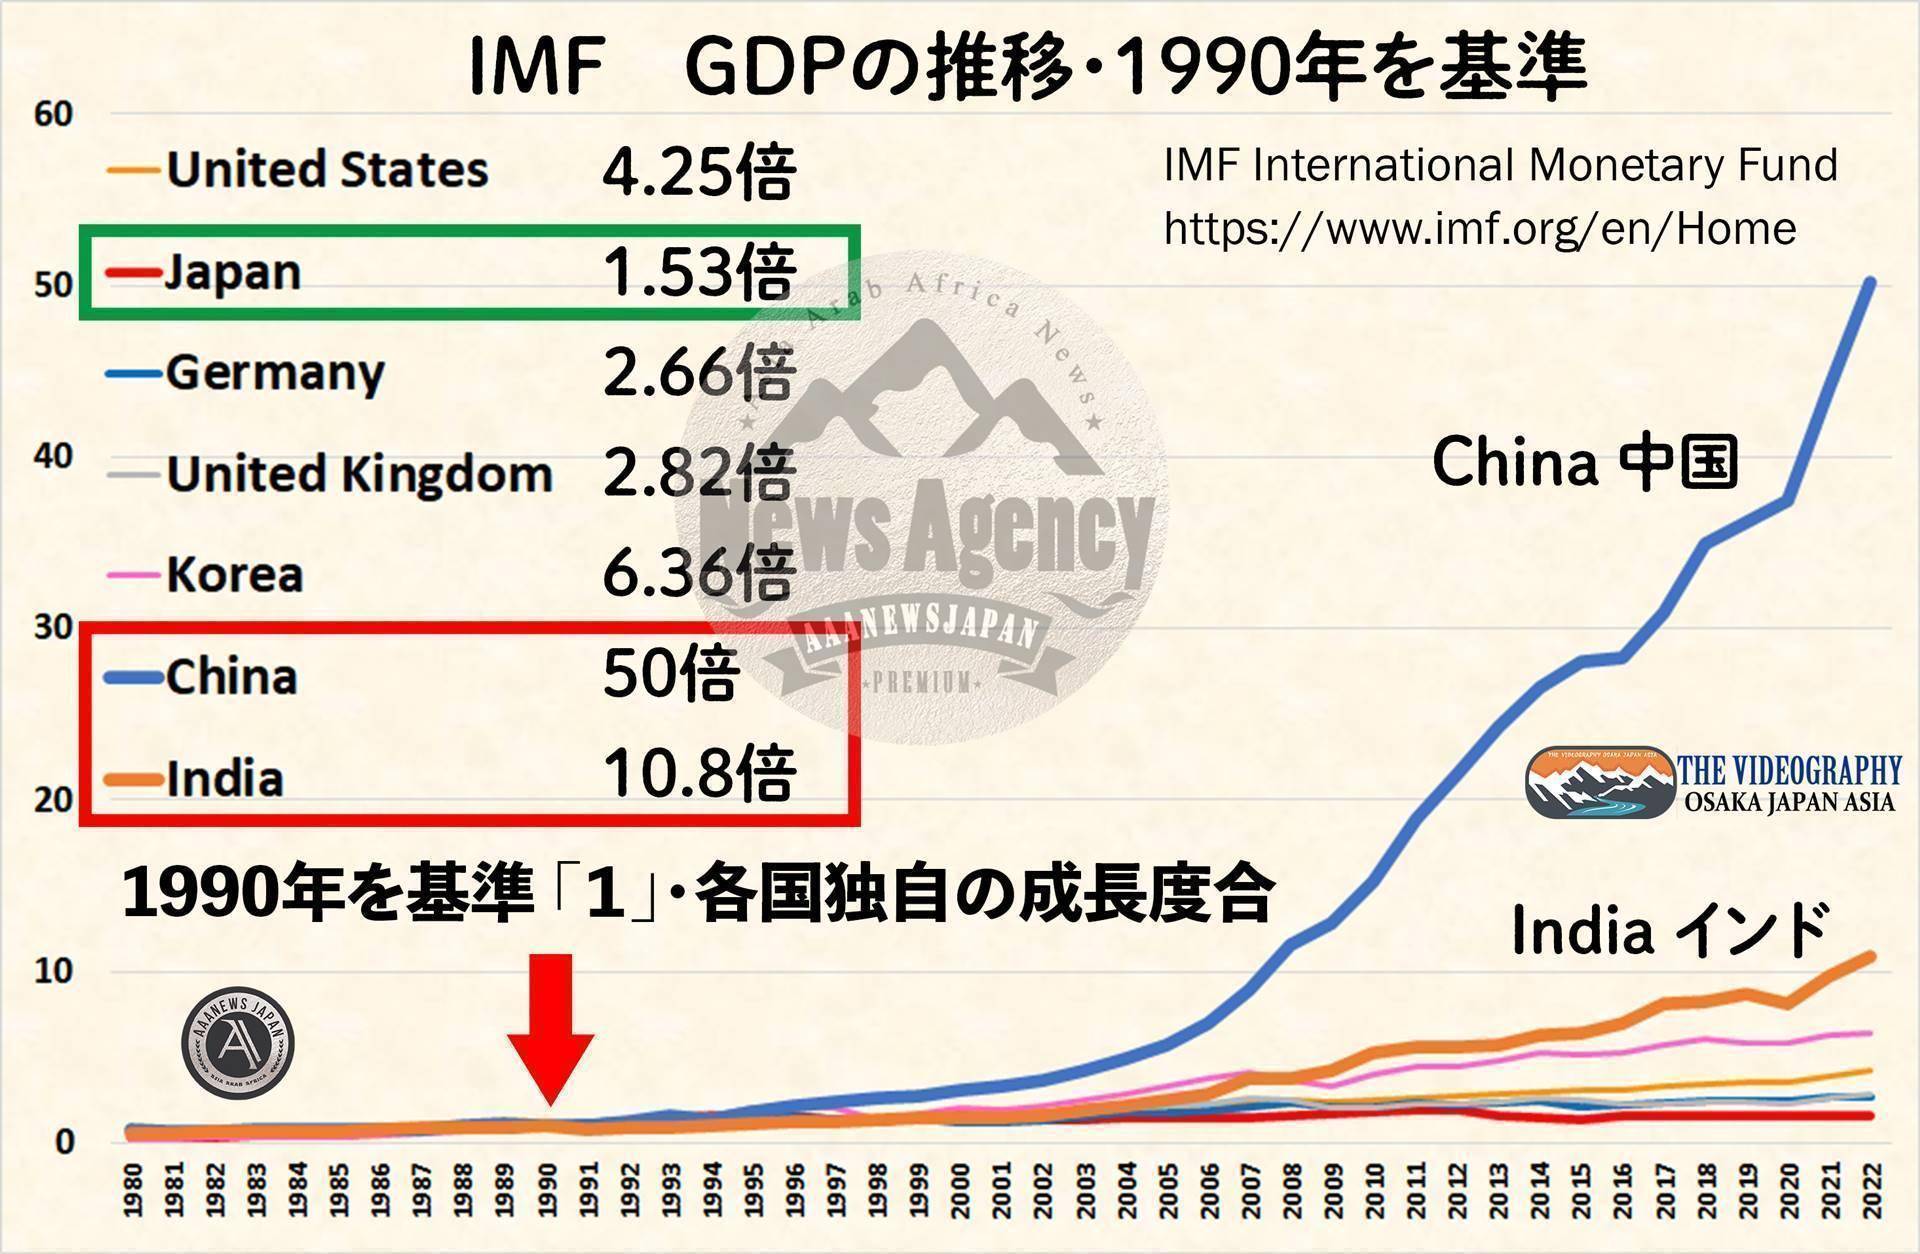 【各国個別のGDP成長推移 1990年を基準に 2022年の数値】 中国 50倍 インド 10.8倍 韓国 6.36倍 アメリカ 4.25倍 イギリス 2.82倍 ドイツ 2.66倍 イタリア 1.75倍 日本 1.53倍 他国は30年でGDPを倍以上に増やしているが、日本は1.53倍（ドルベース）の成長